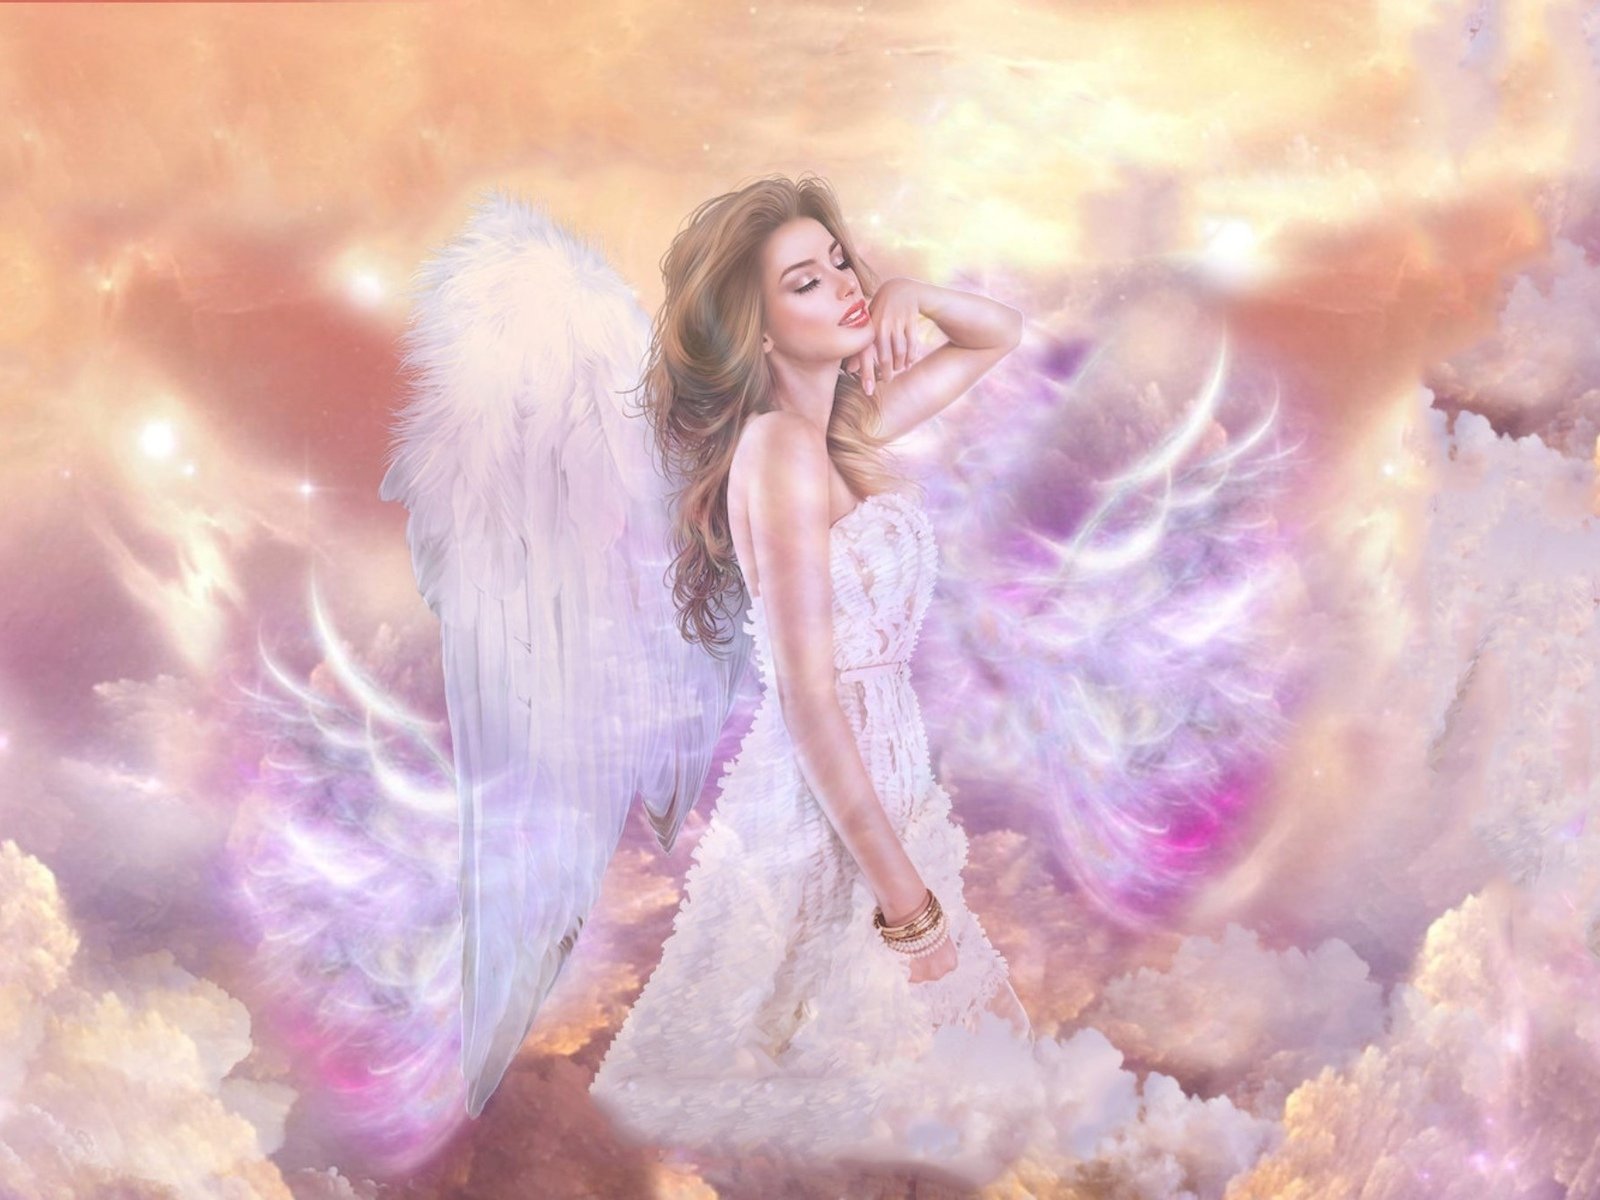 Нежный мой ангел земной. Красивый ангел. Девушка - ангел. Небесные ангелы. Нежный ангел девушка.